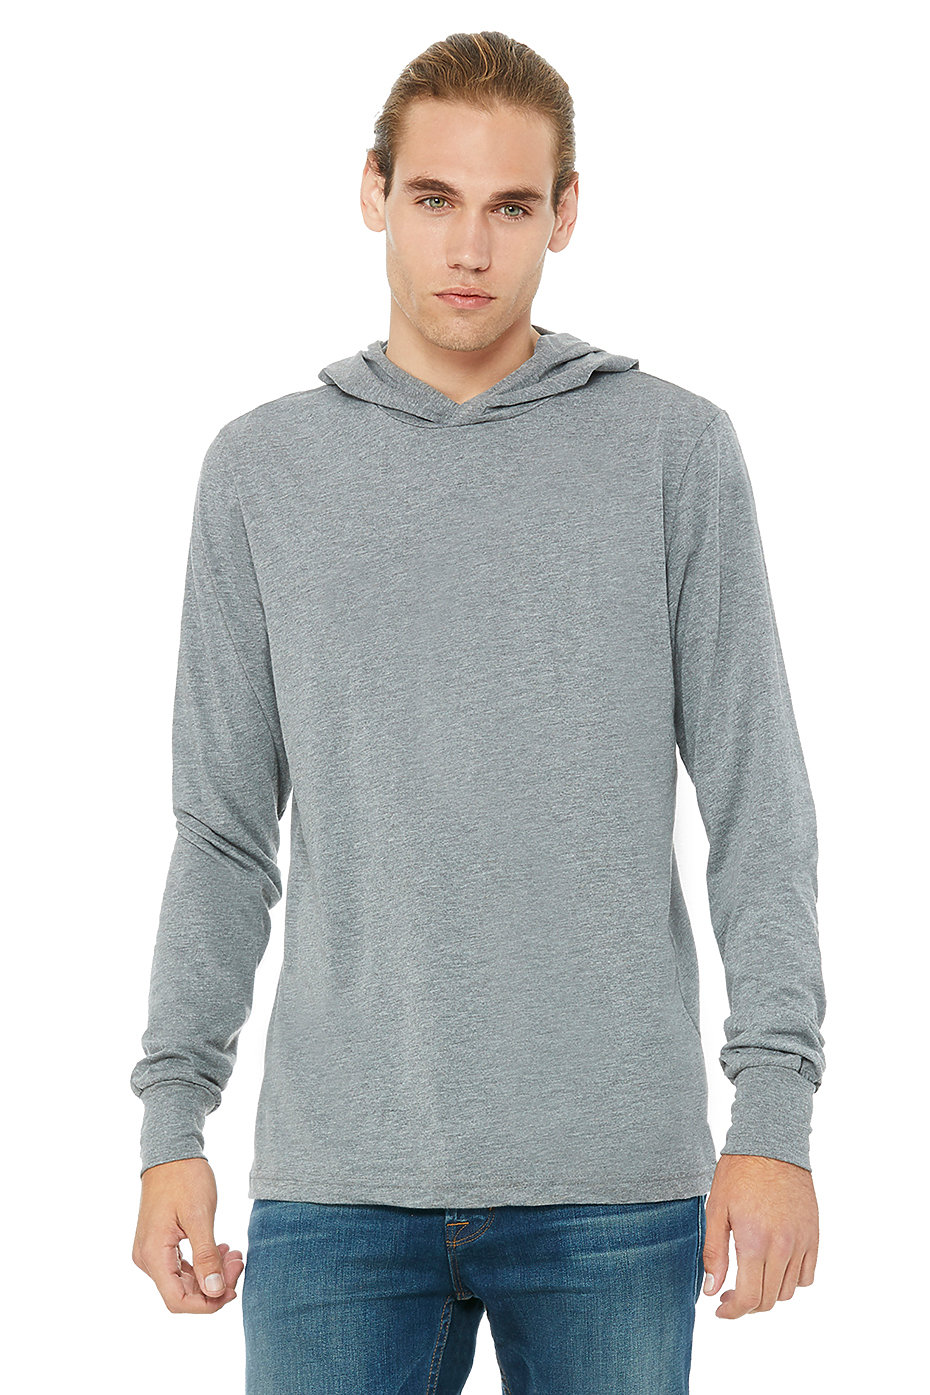 Wholesale Long Sleeve Hoodie, Custom Sweatshirts